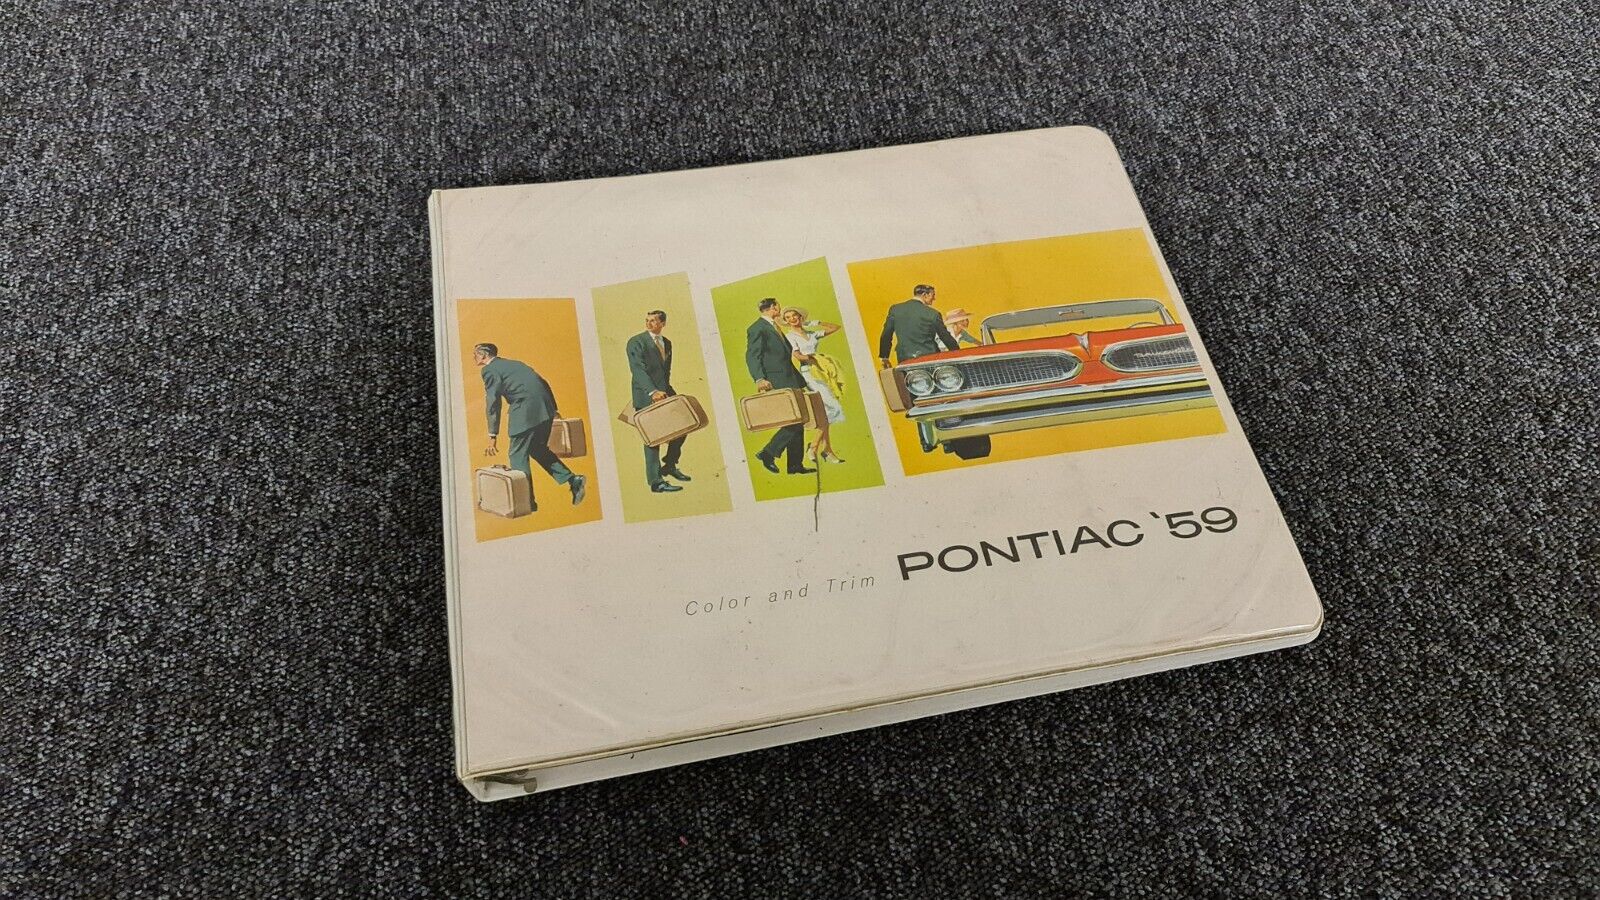 Rare Original 1959 Pontiac Dealer Trim Book - Album w/ Interior & Paint Samples